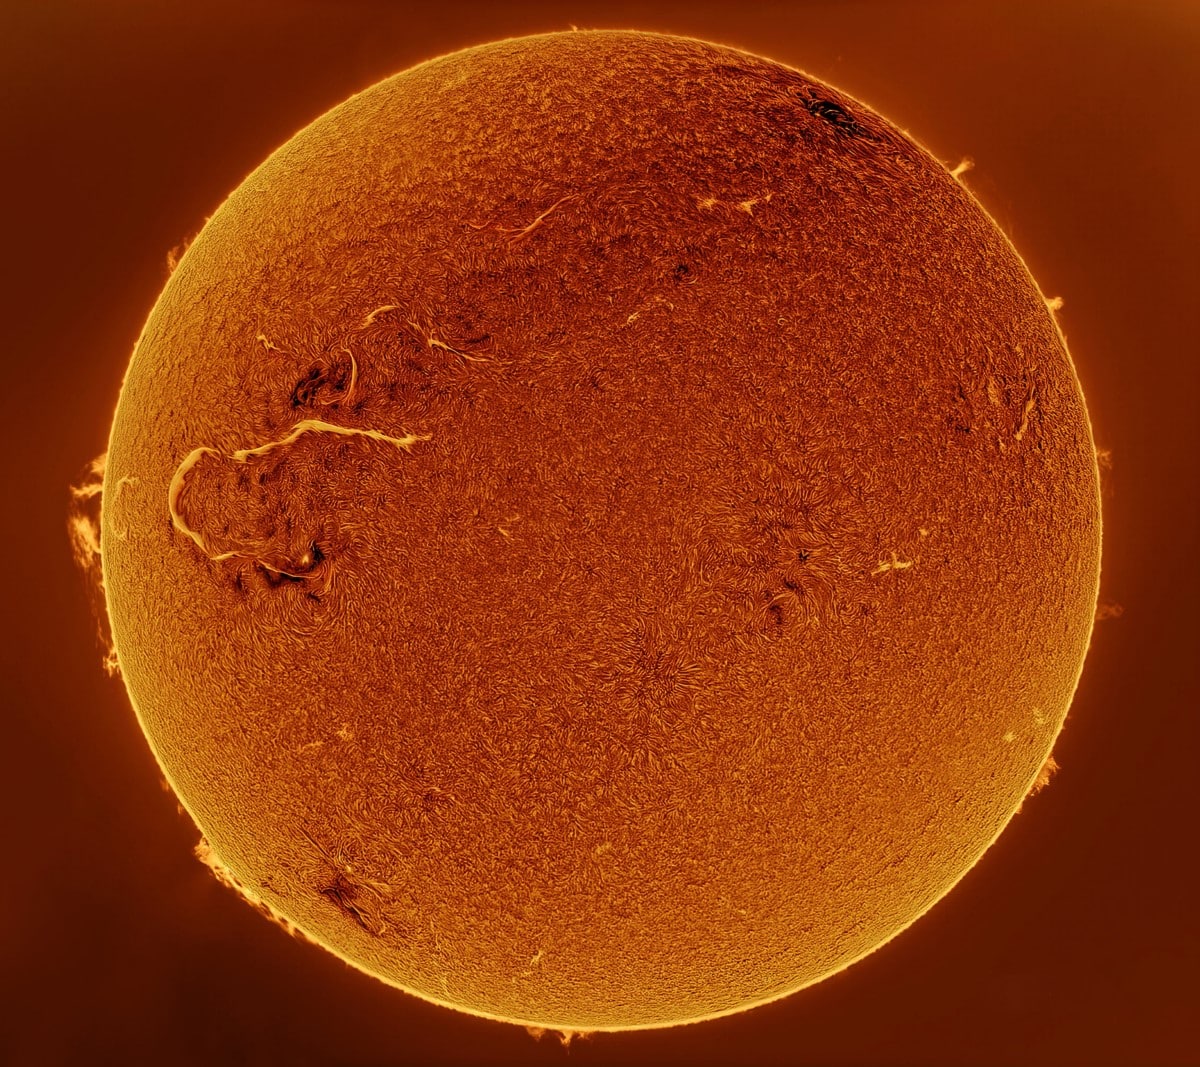 El sol se representa a medida que avanza hacia su ciclo máximo.